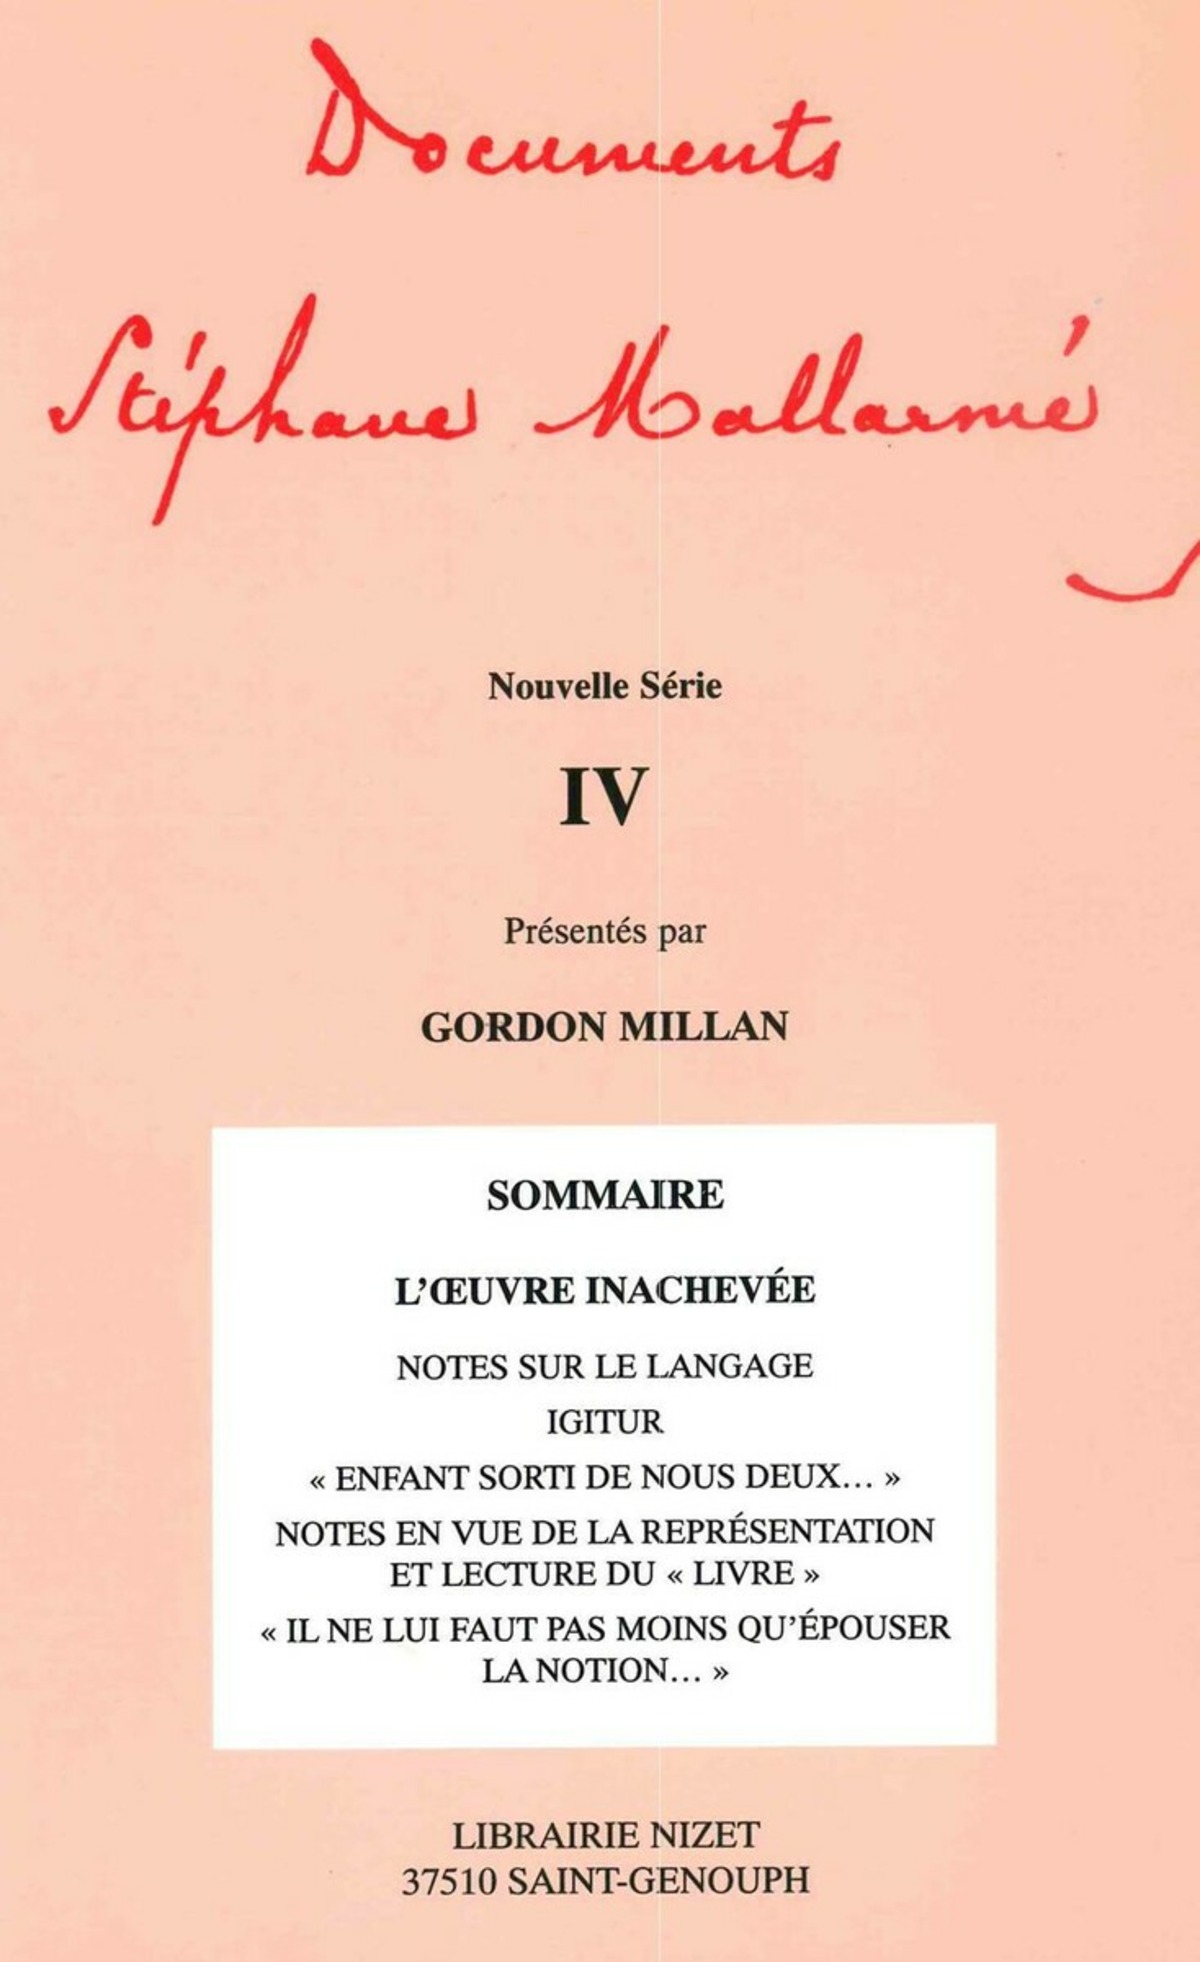 Documents Stéphane Mallarmé - Nouvelle série IV